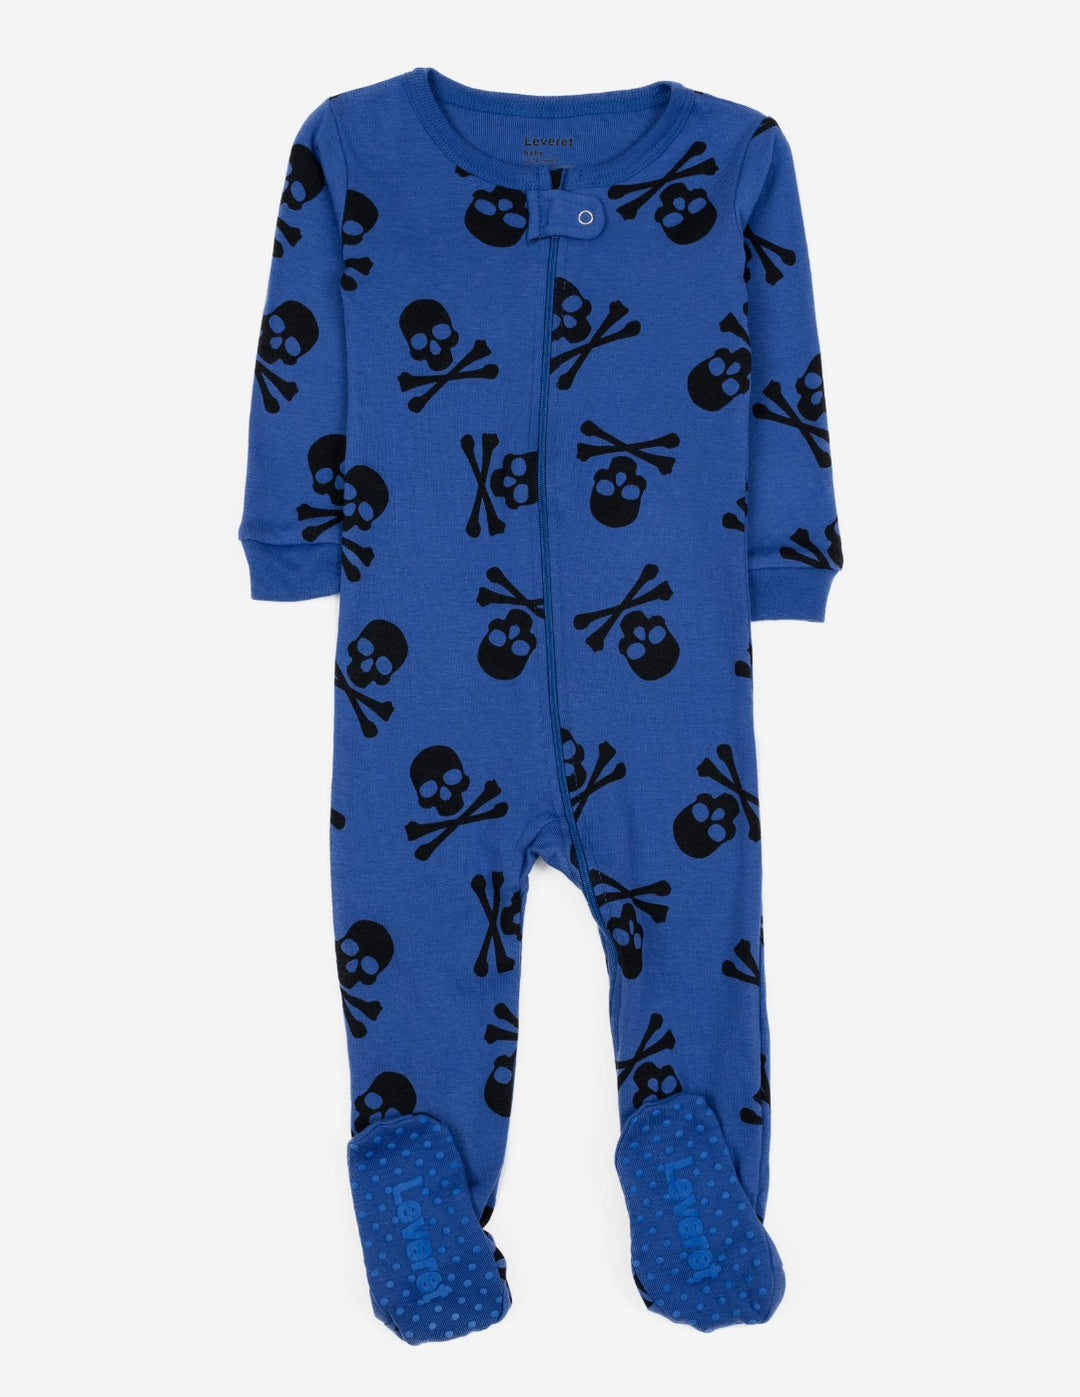 royal blue skull baby footed pajamas